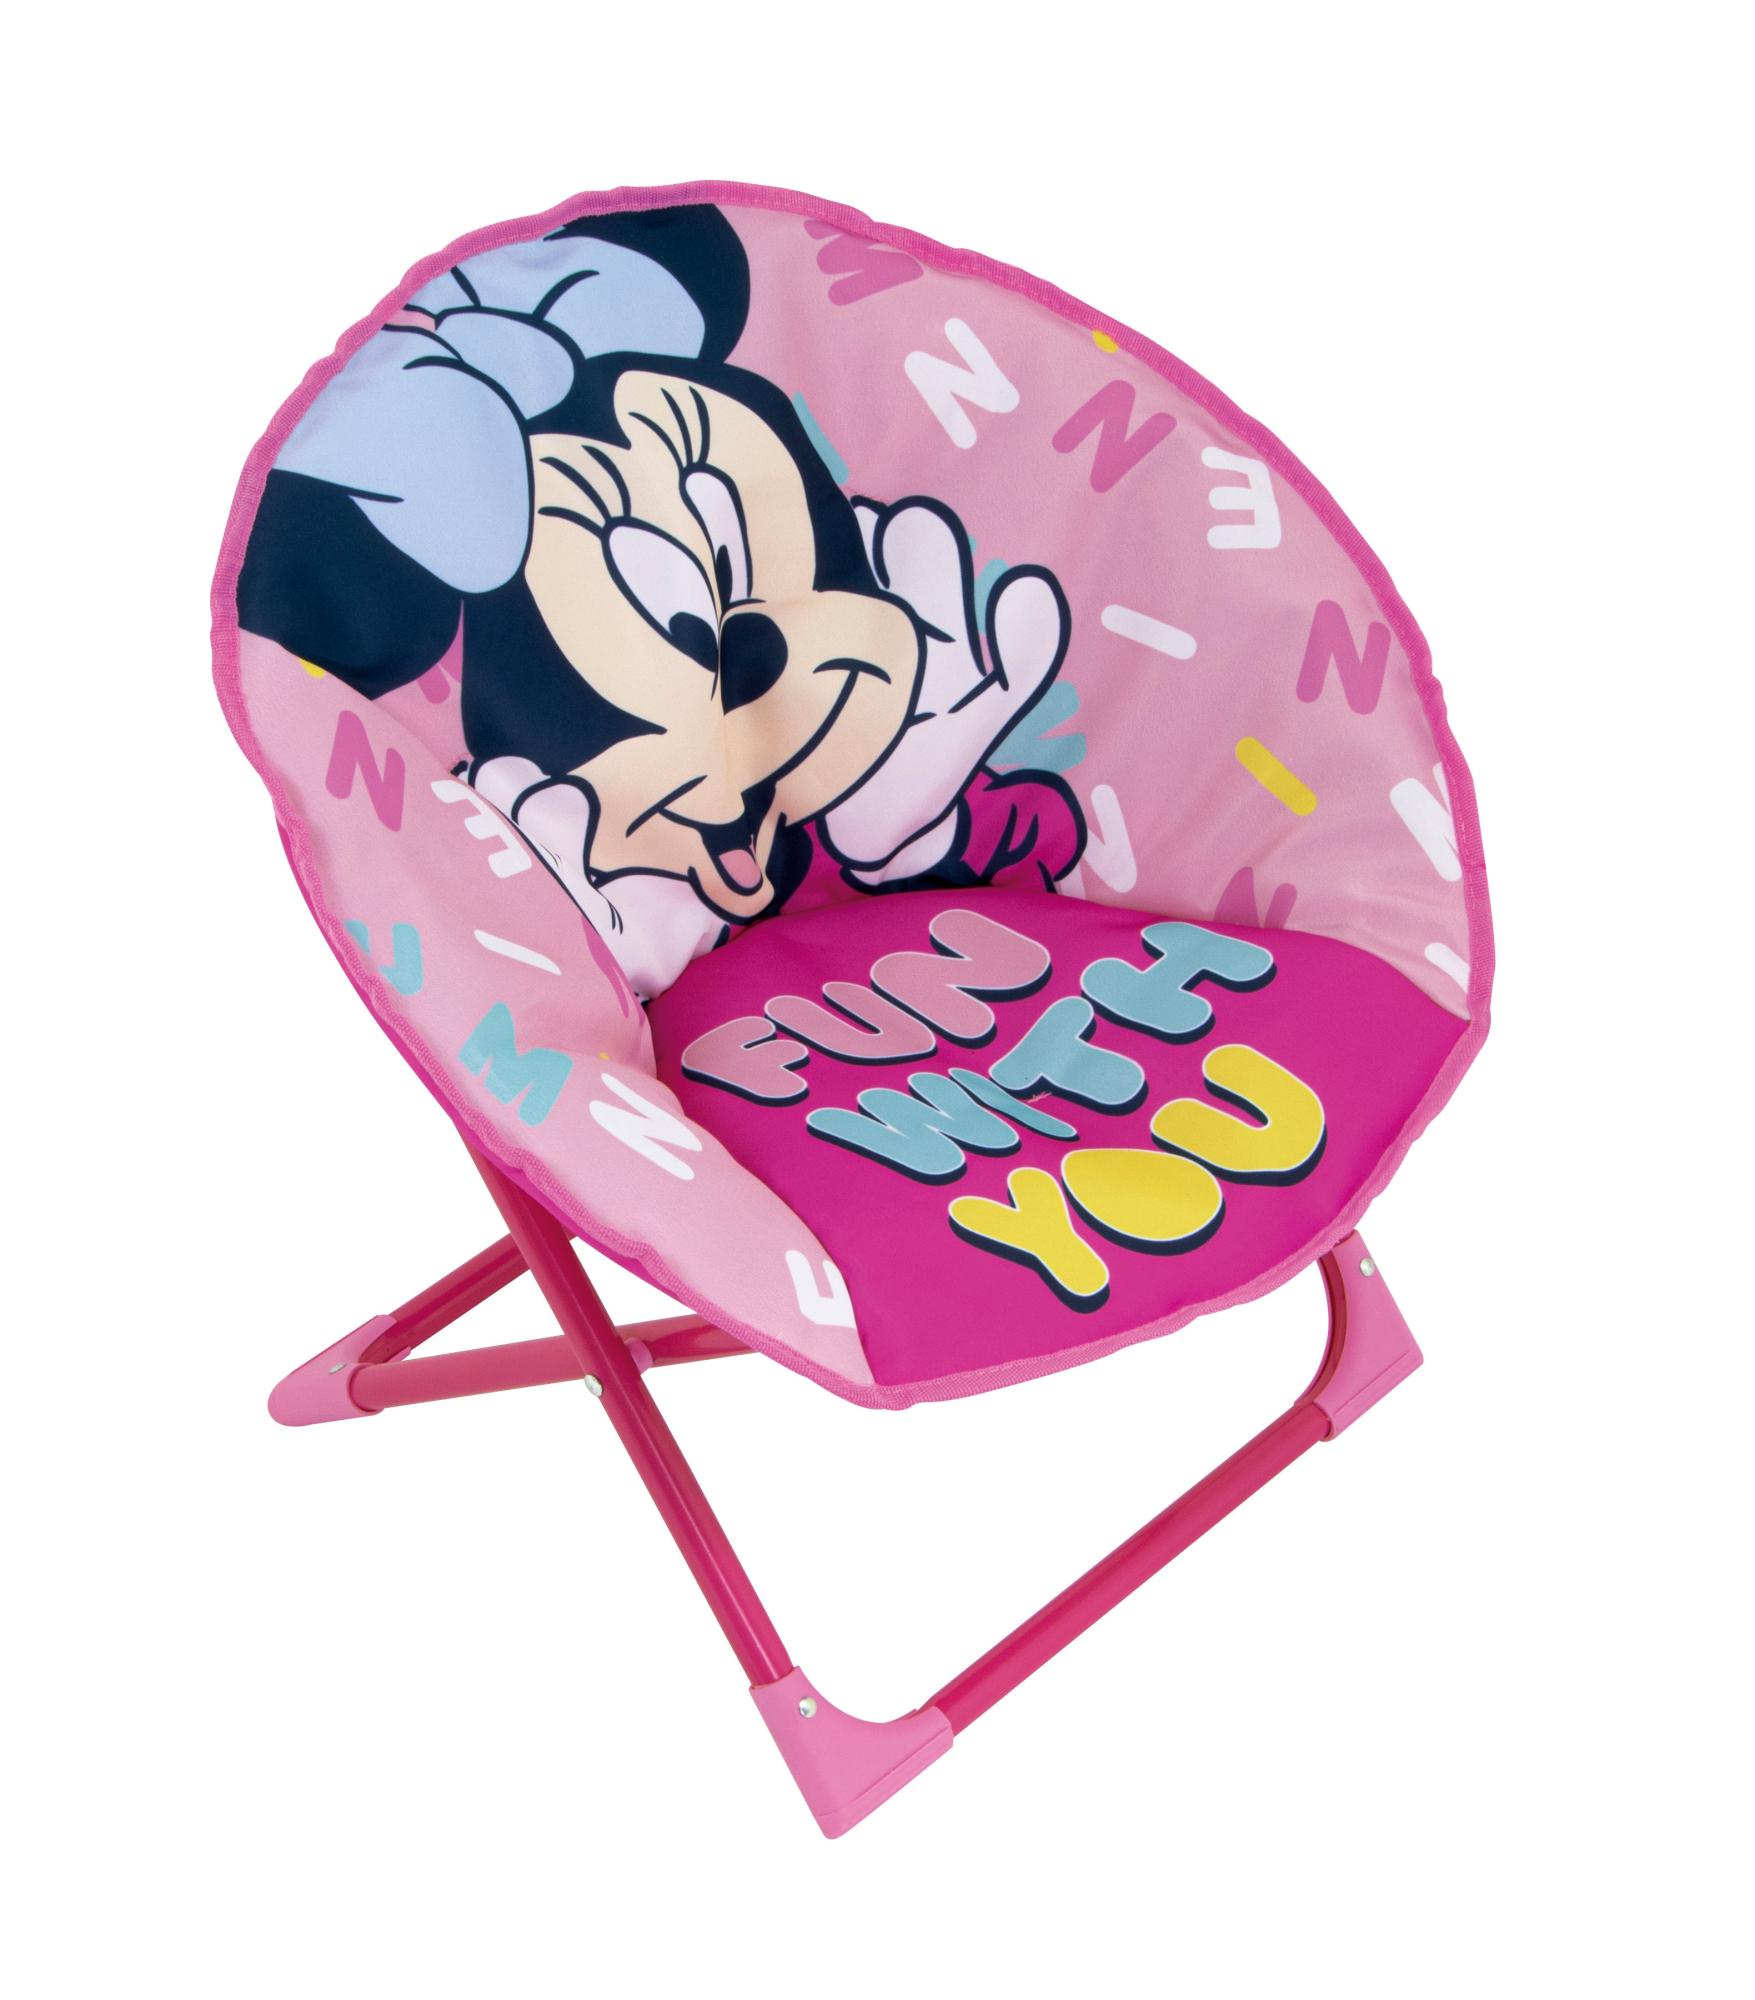 Silla plegable de minnie mouse color rosa de 50x50x50cm